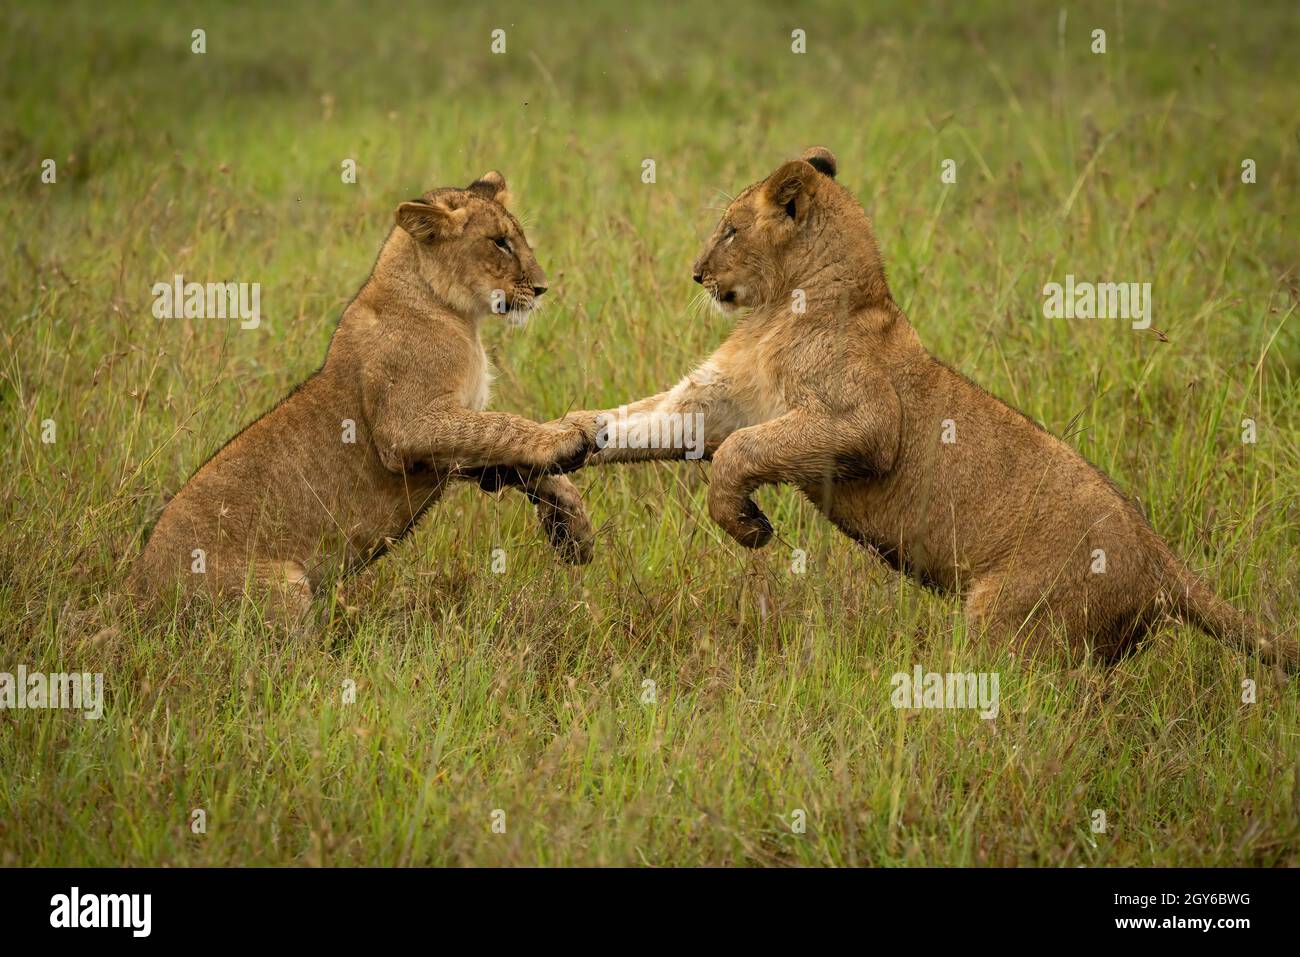 Cachorros de león en las patas traseras de la hierba Foto de stock